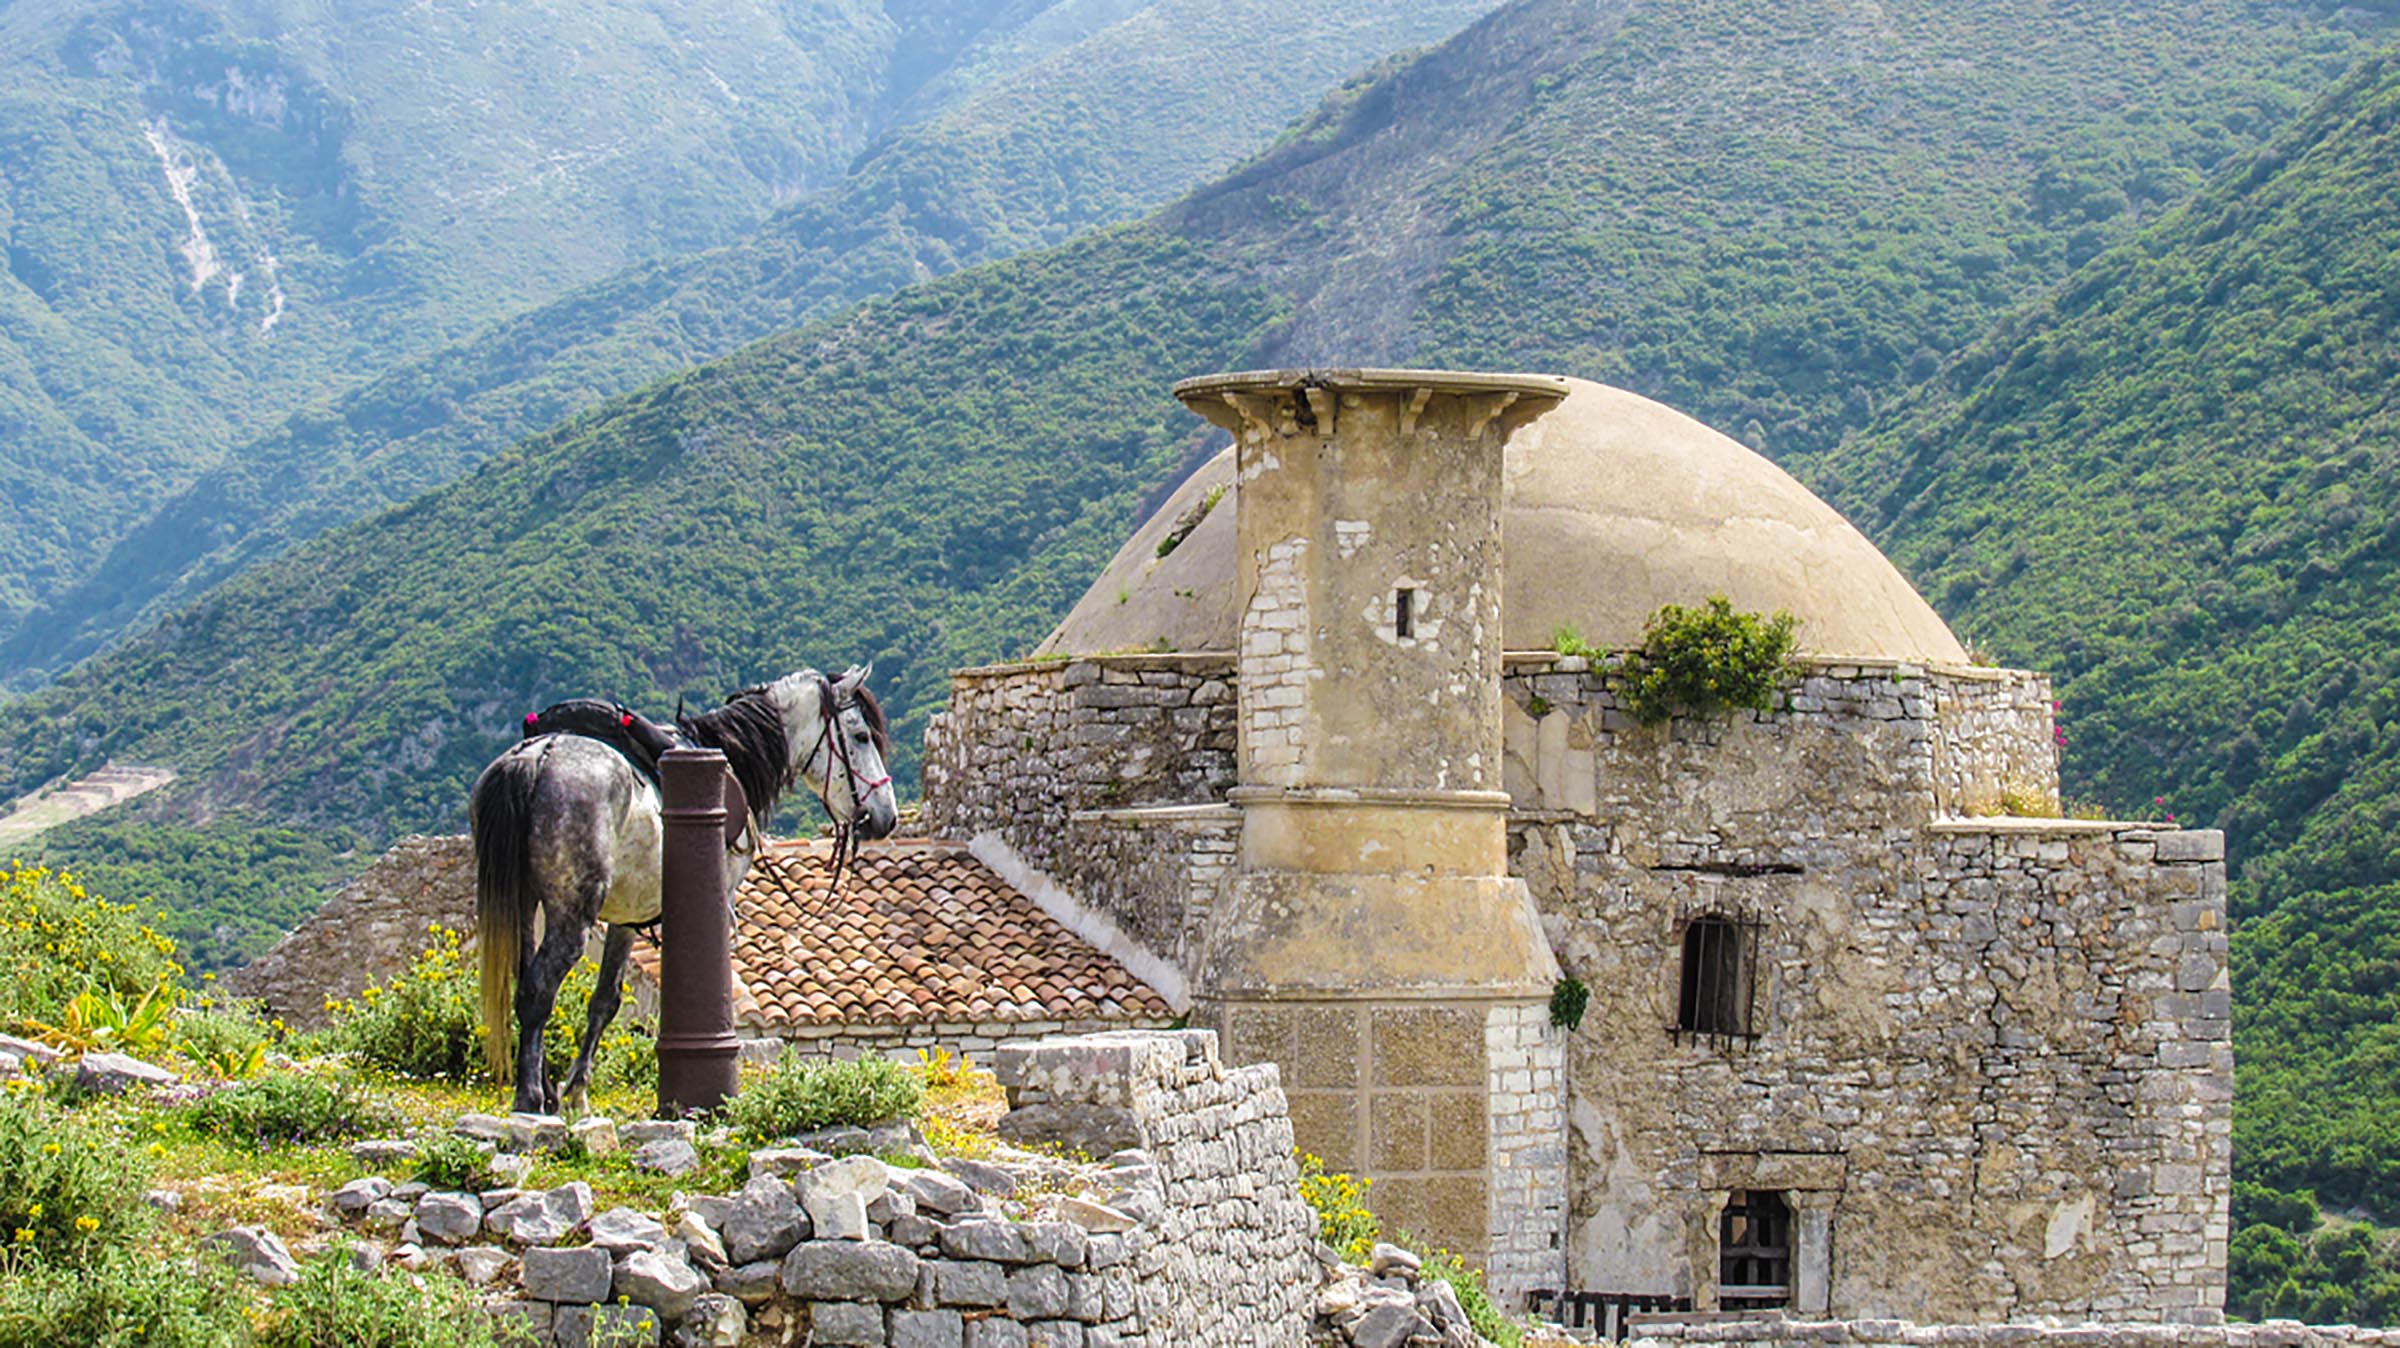 Horse Riding Holidays Albania